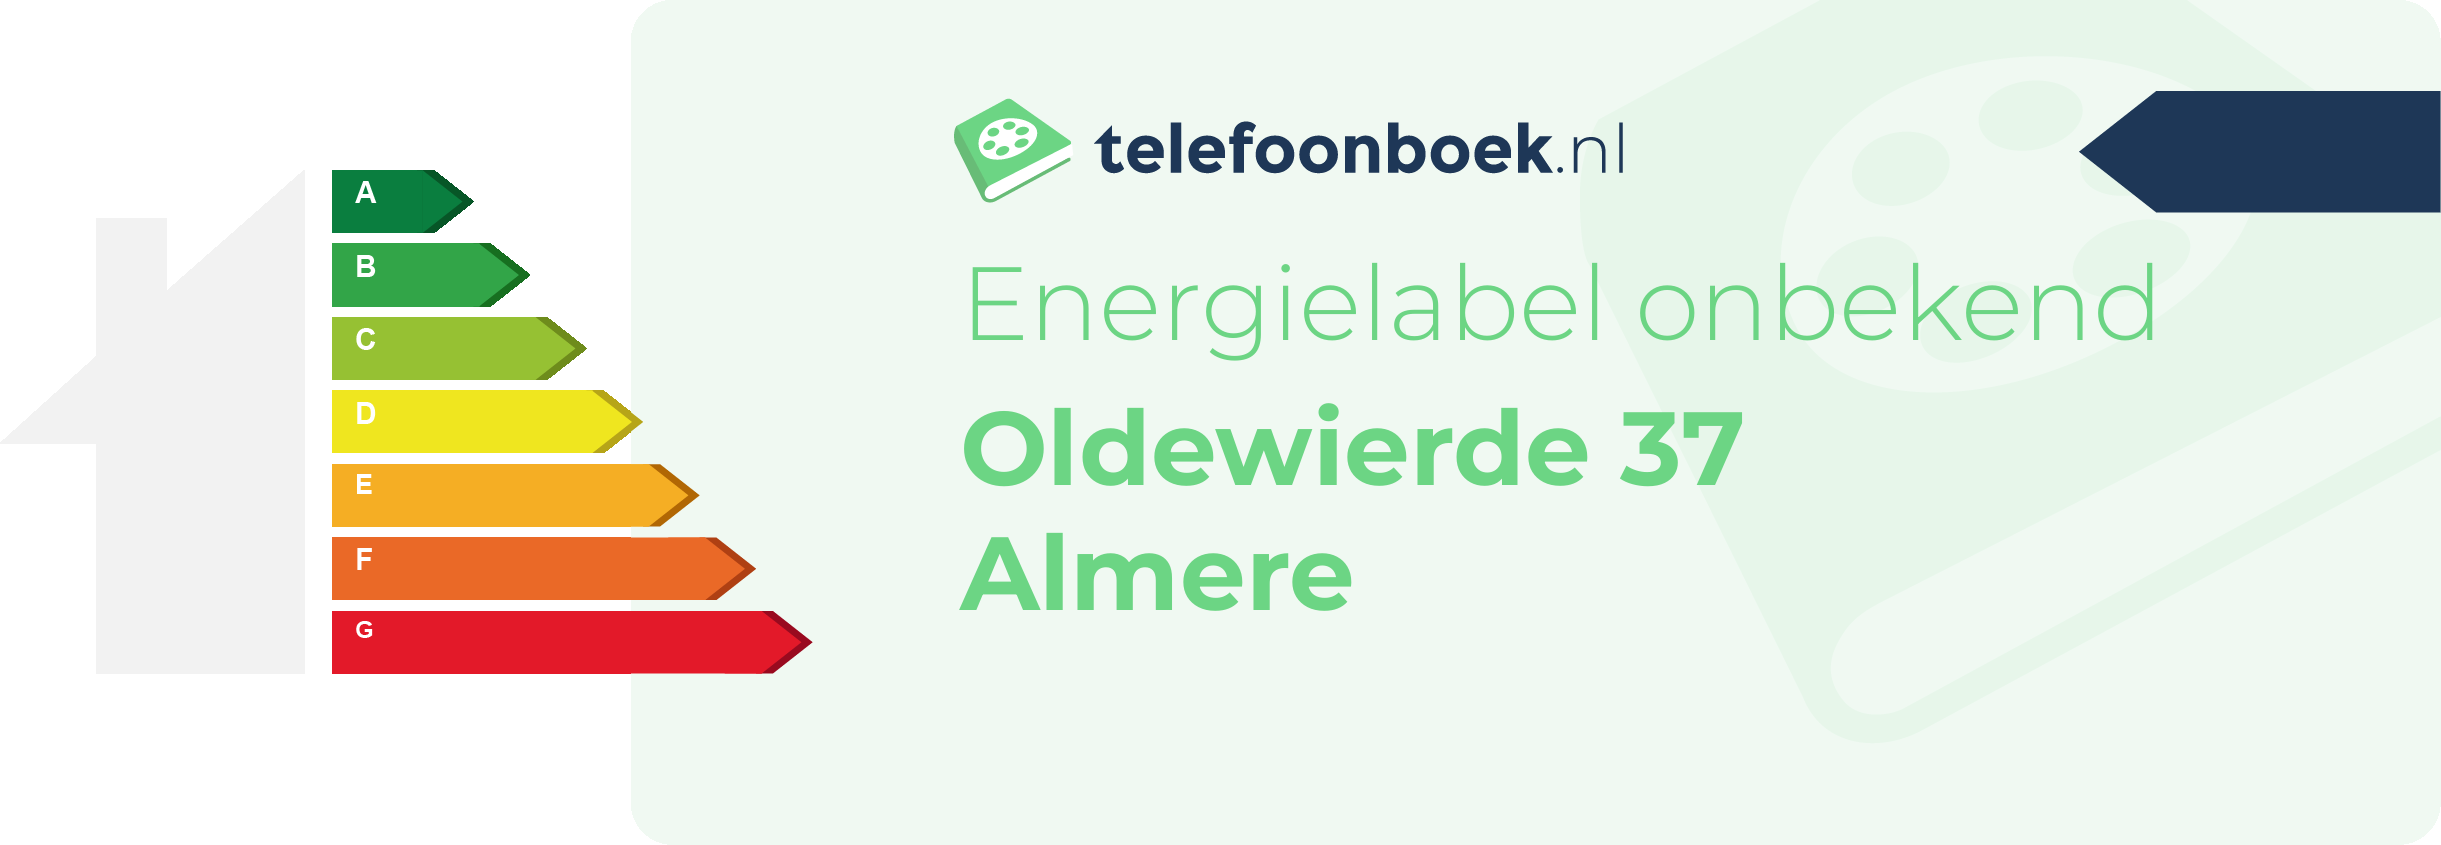 Energielabel Oldewierde 37 Almere